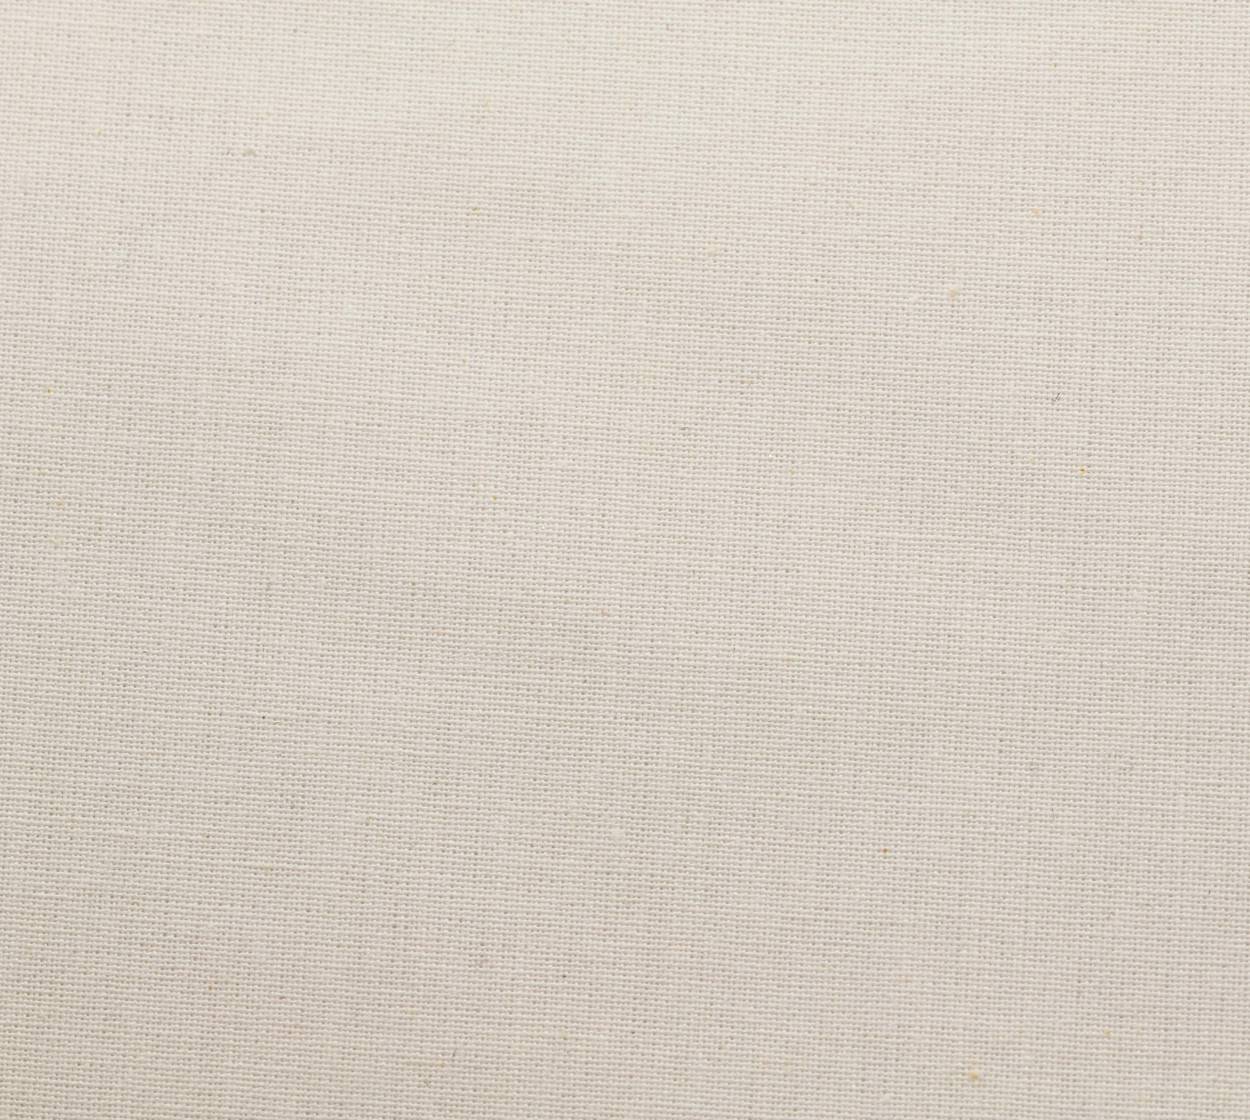 Nessel Baumwolle, weiß, 6,20 m breit, 6N16 im Stamm online Store München